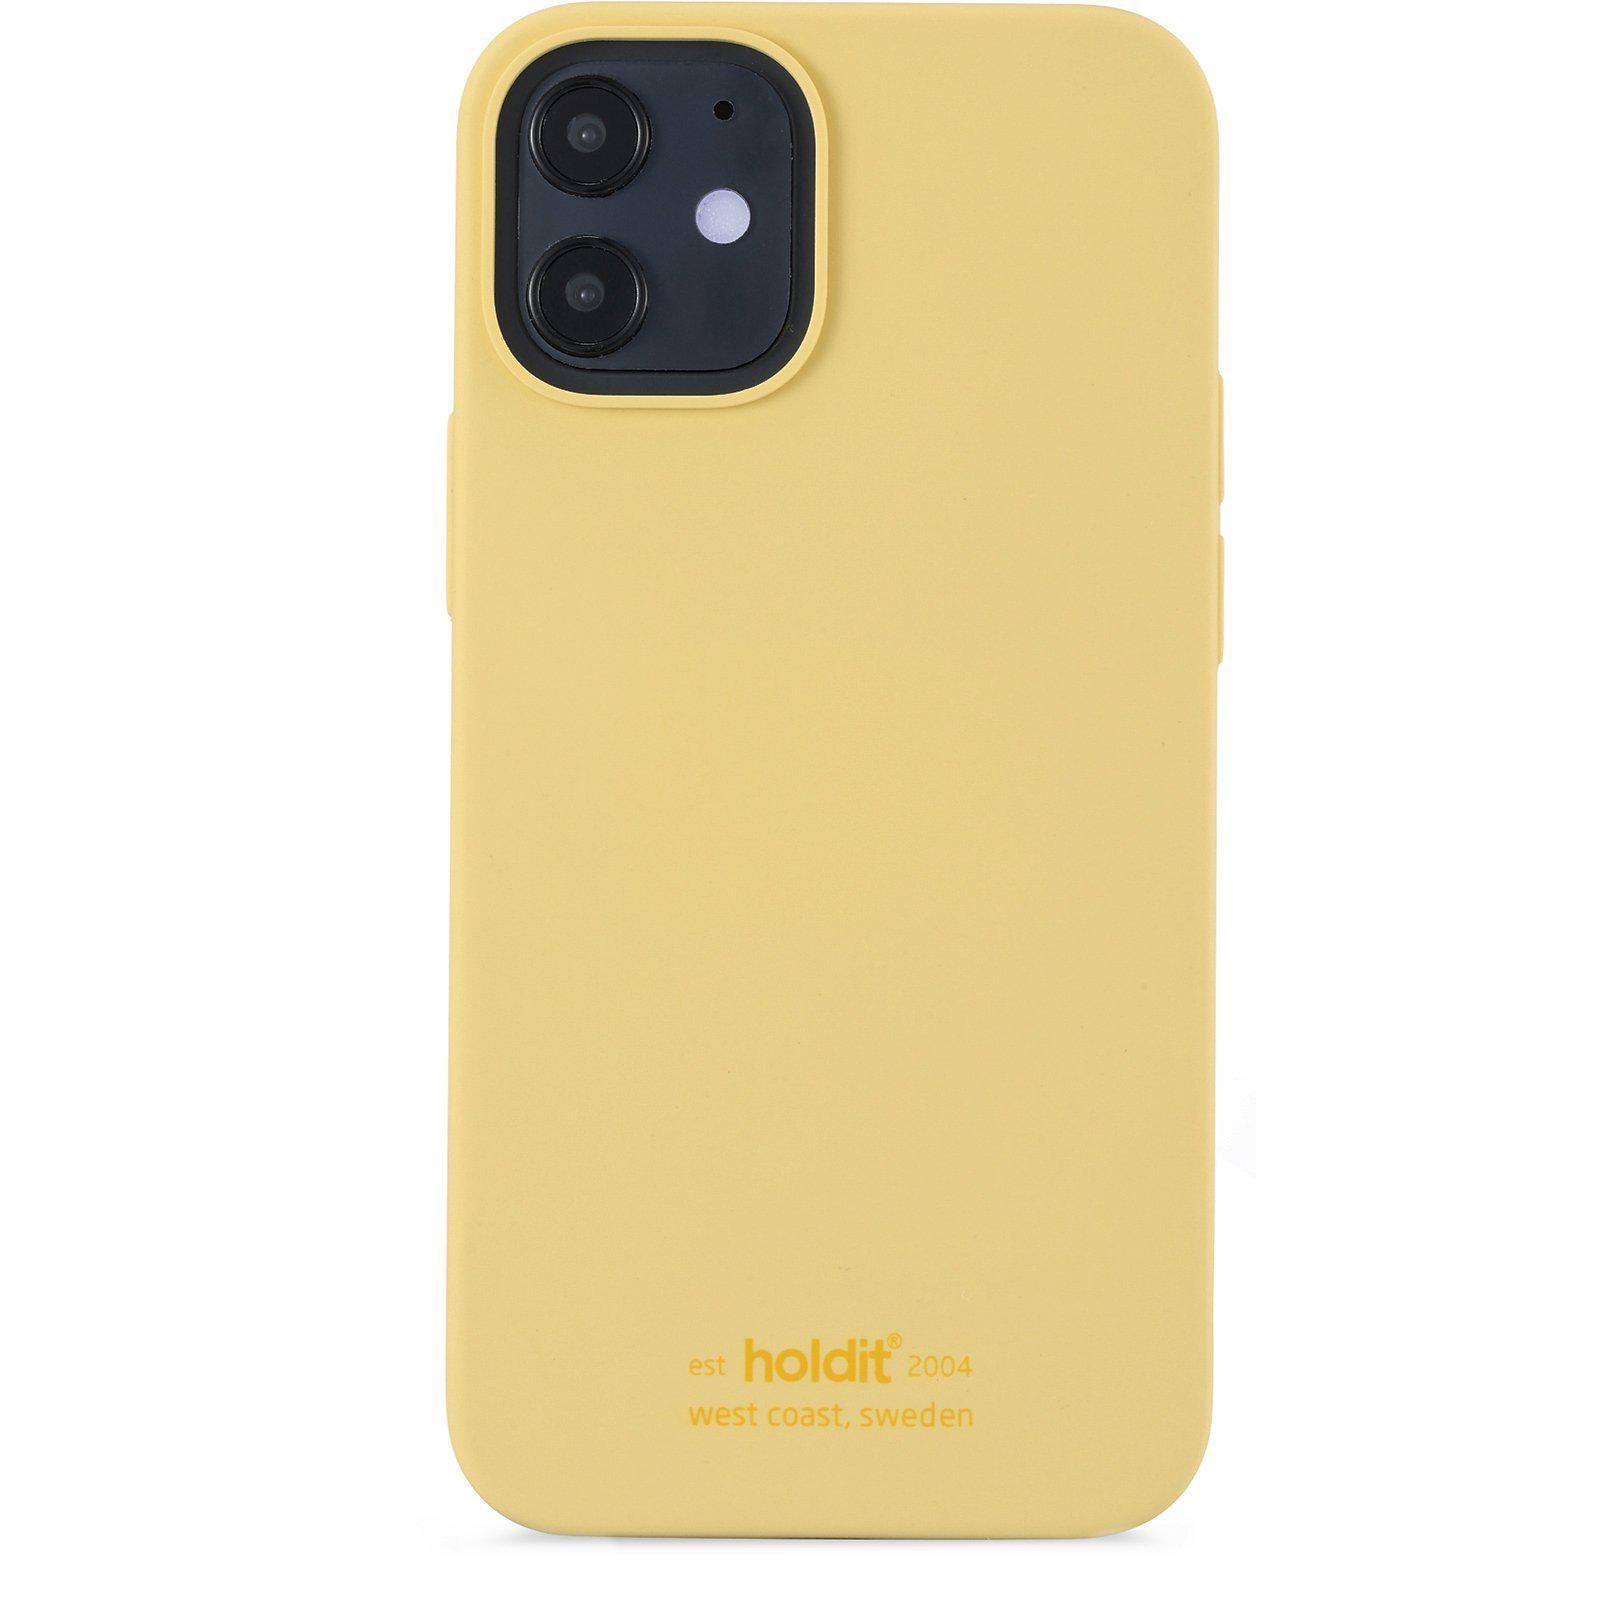 Silikonhülle iPhone 12 Mini Yellow